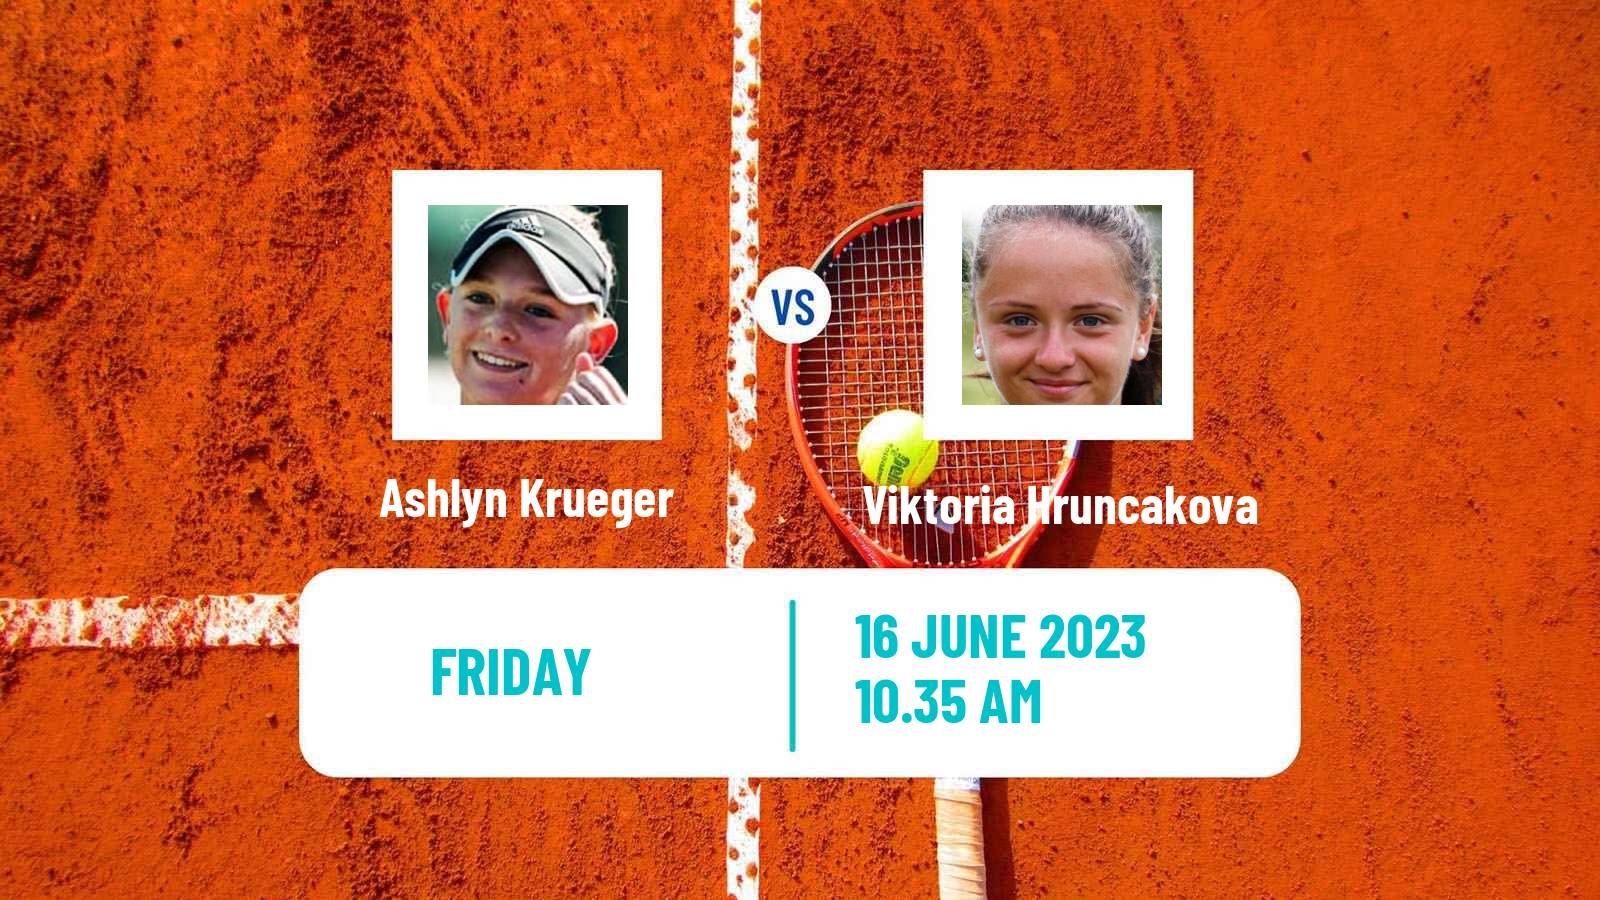 Tennis WTA Hertogenbosch Ashlyn Krueger - Viktoria Hruncakova